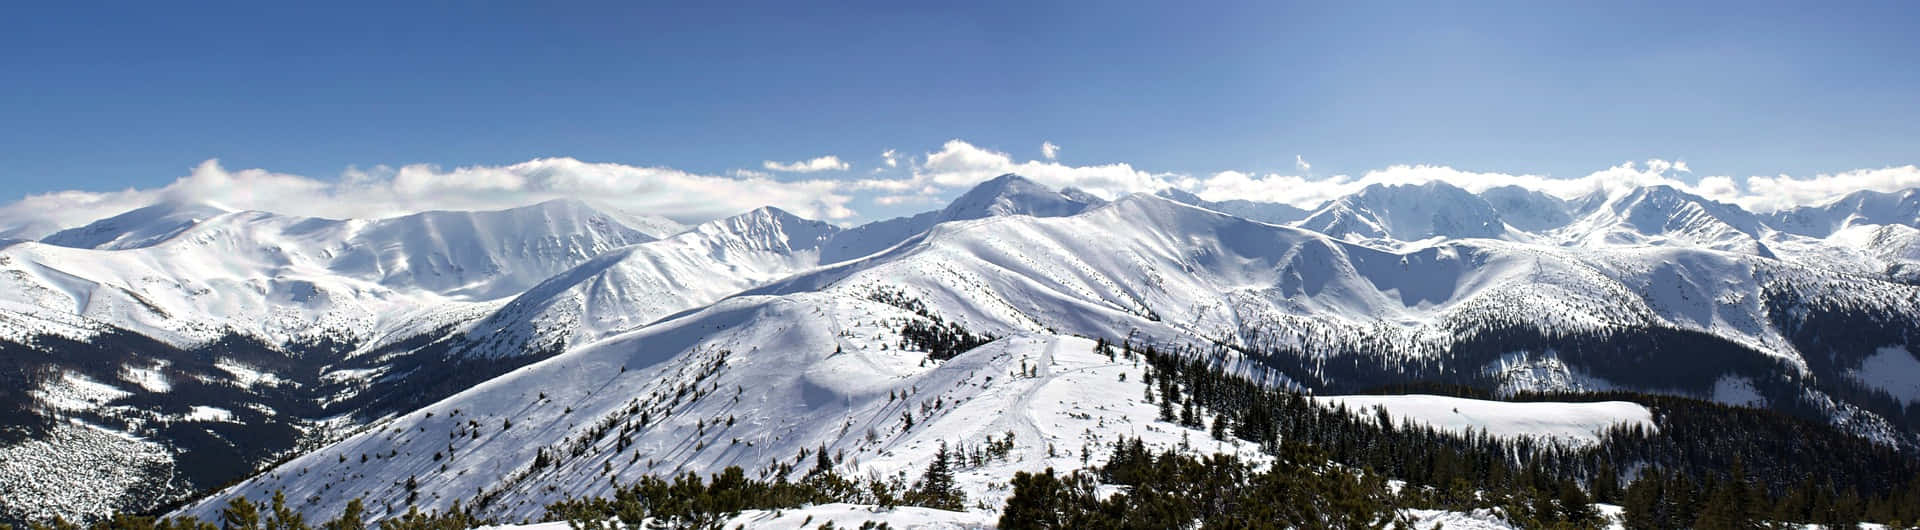 Imagenpanorámica De Cordilleras Nevadas